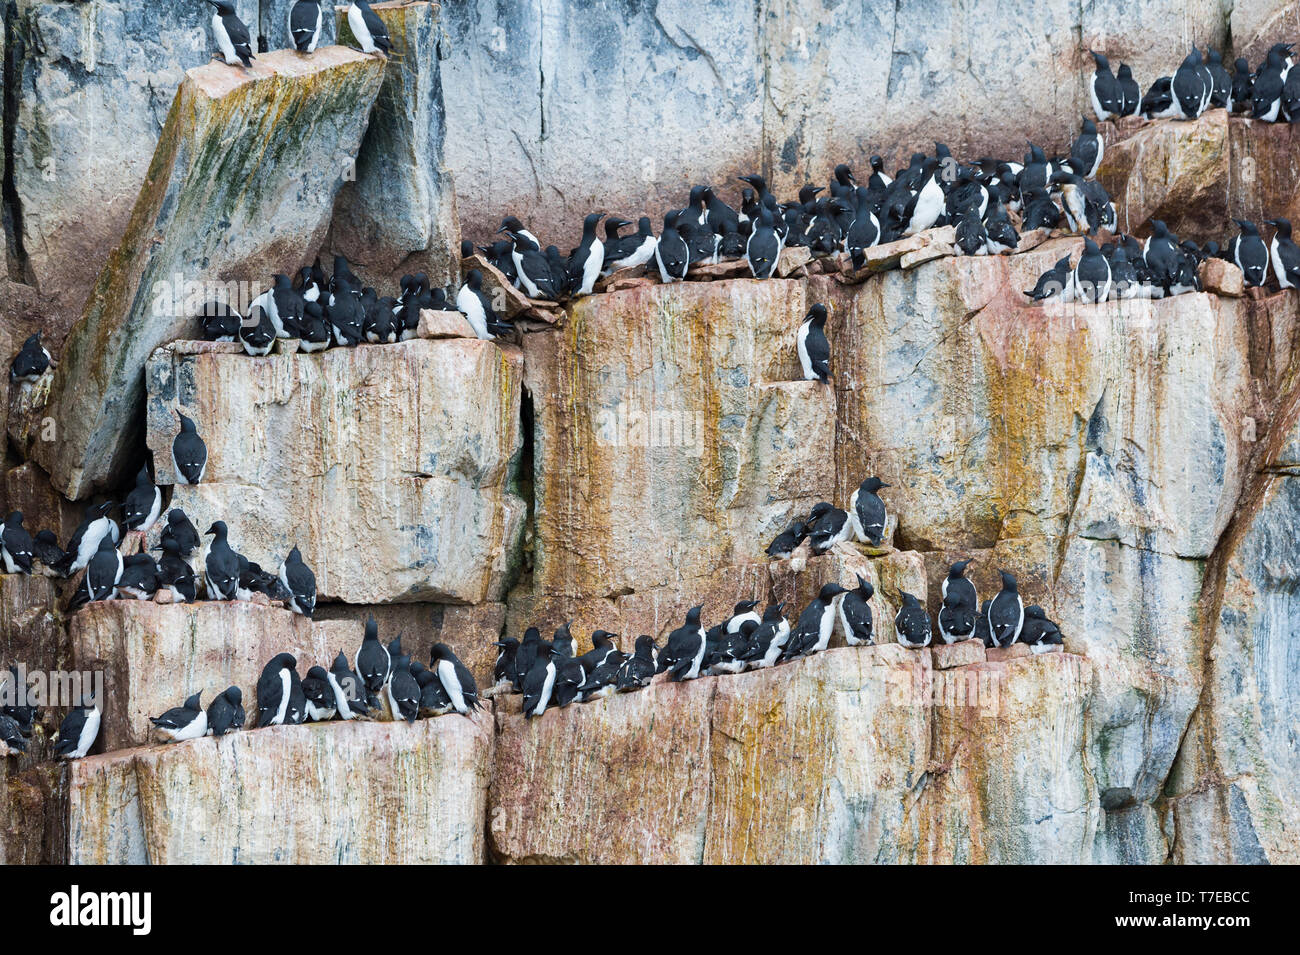 Thick-billed Murres (Uria lomvia) colony, Alkefjellet bird cliff, Hinlopen Strait, Spitsbergen Island, Svalbard archipelago, Norway Stock Photo